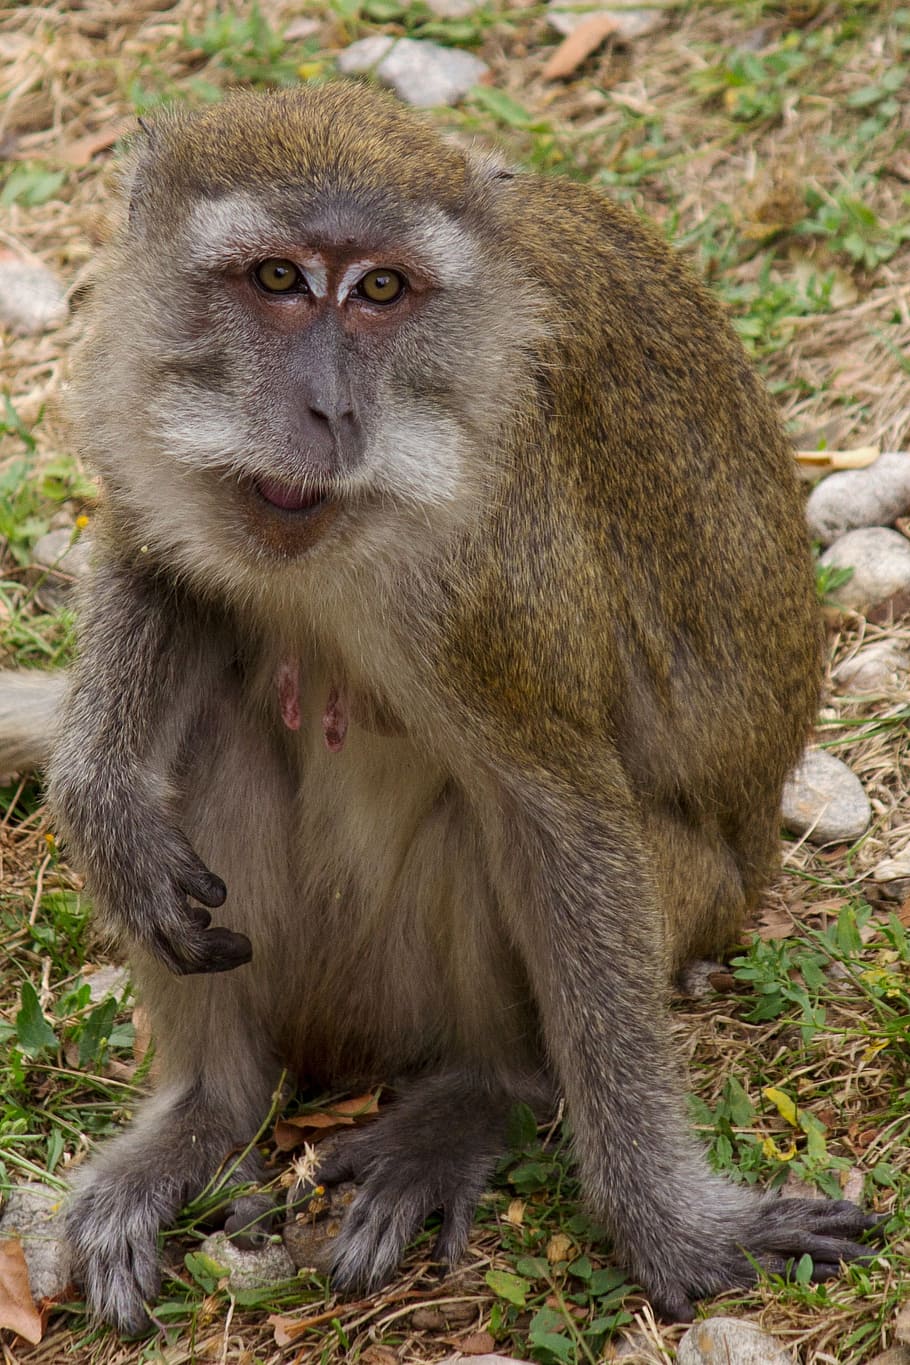 Javanese, Monkey, Macaque, javanese monkey, makake, zoo, animal world, mammal, wildlife photography, fur